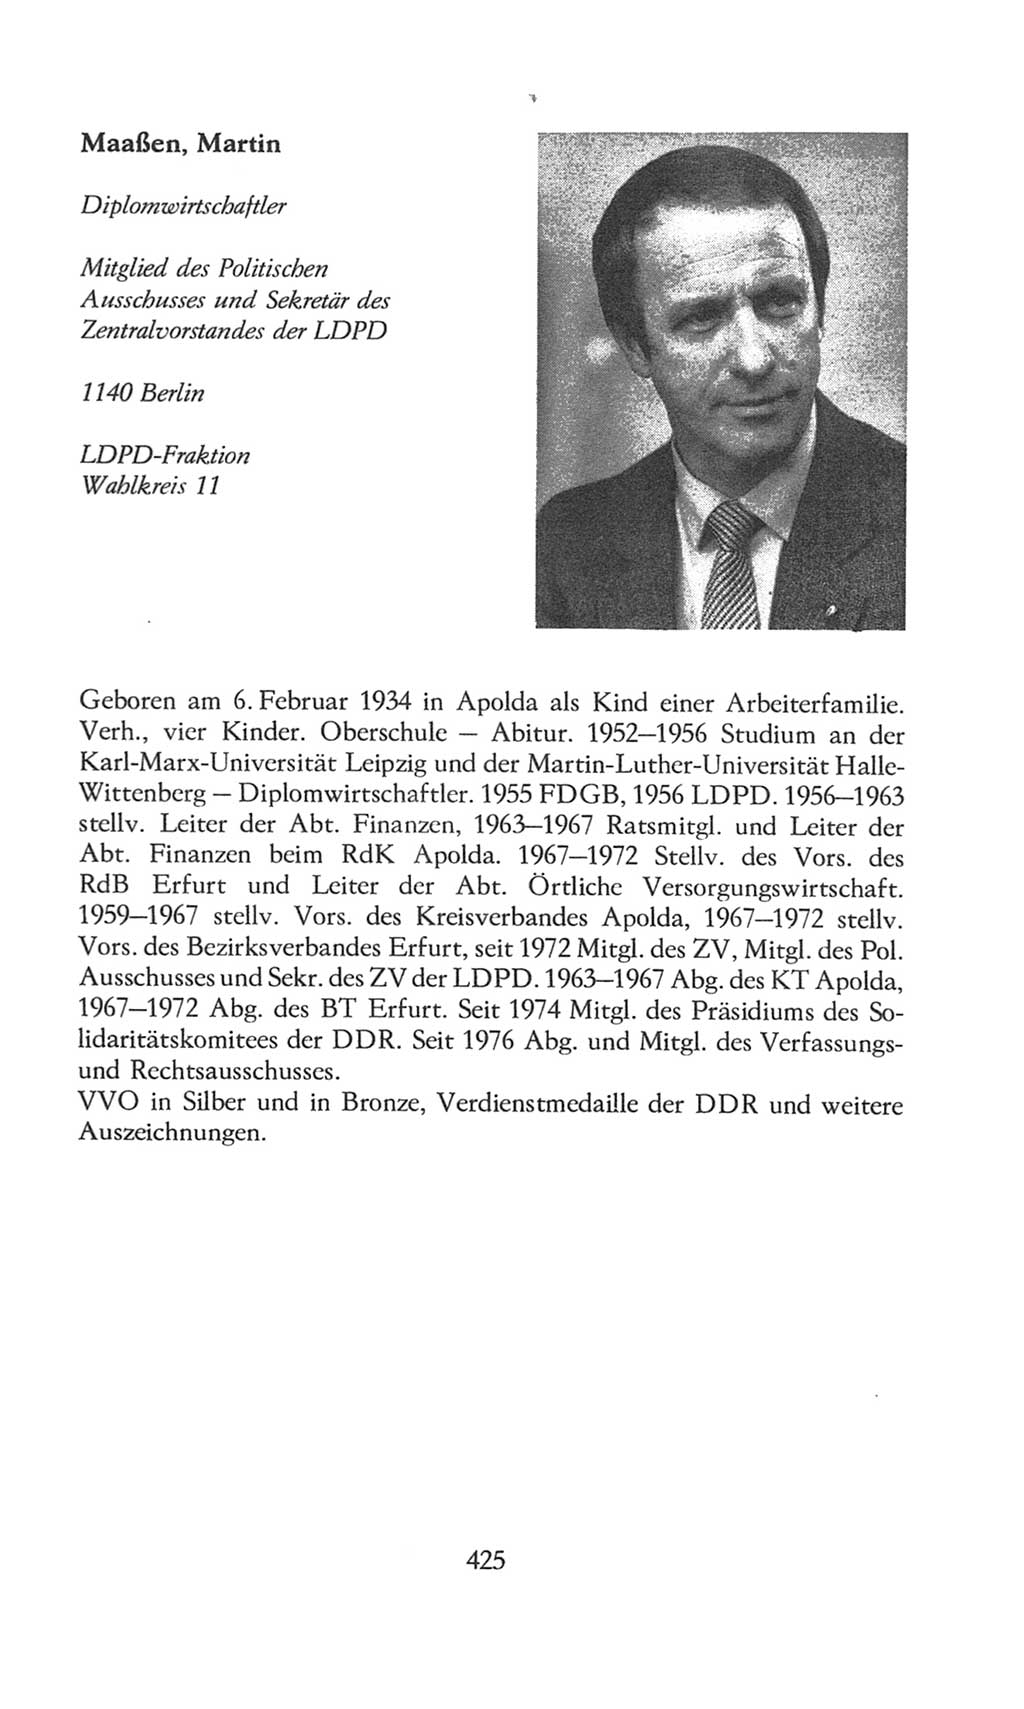 Volkskammer (VK) der Deutschen Demokratischen Republik (DDR), 8. Wahlperiode 1981-1986, Seite 425 (VK. DDR 8. WP. 1981-1986, S. 425)